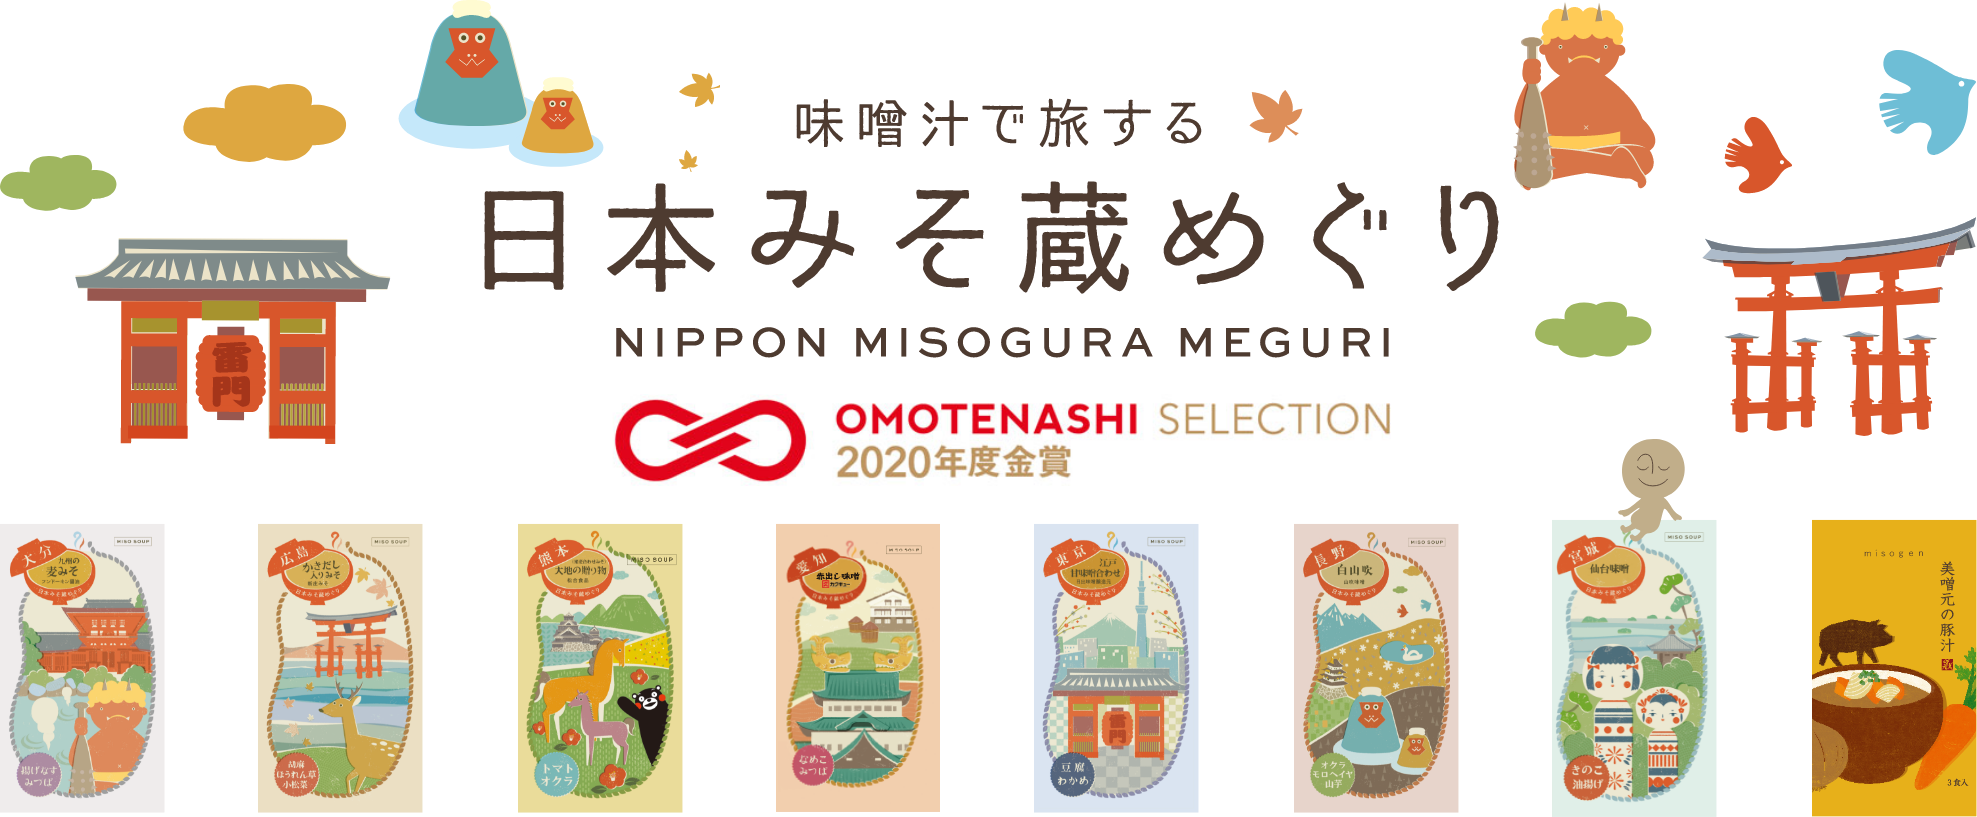 味噌汁で旅する 日本みそ蔵めぐり NIPPON MISOGURA MEGURI